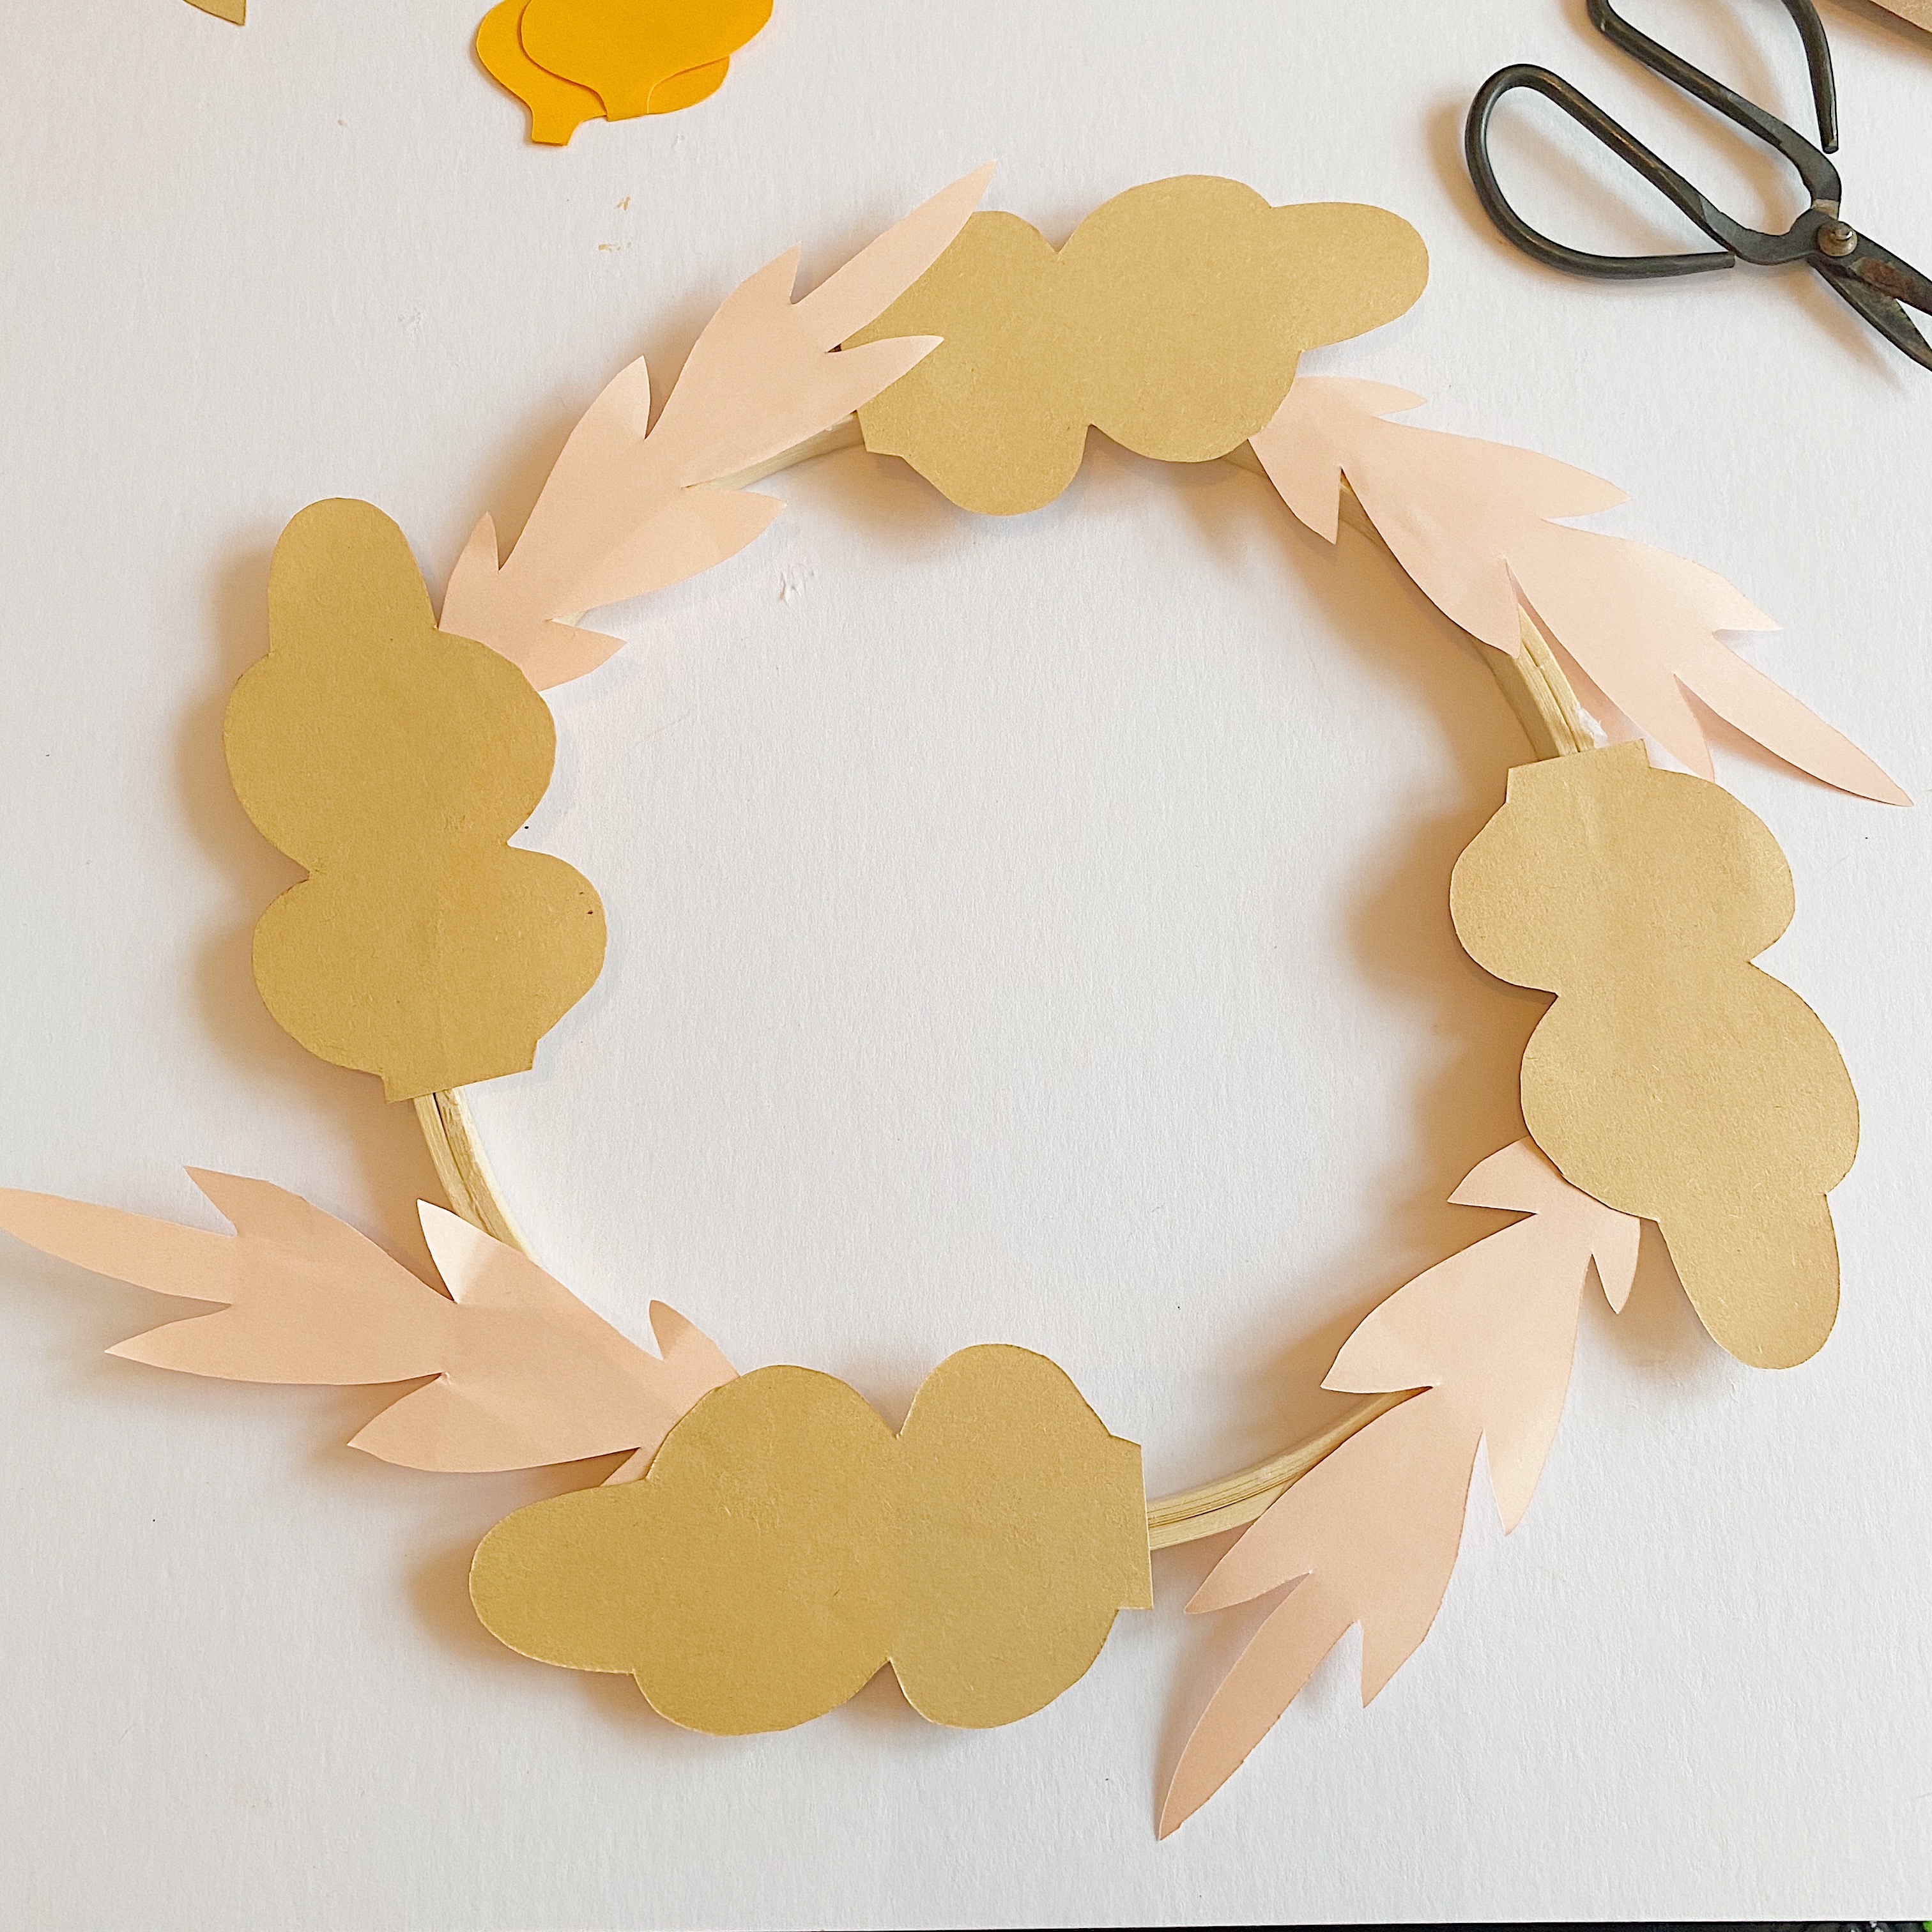 How to make an Autumn Wreath step 3